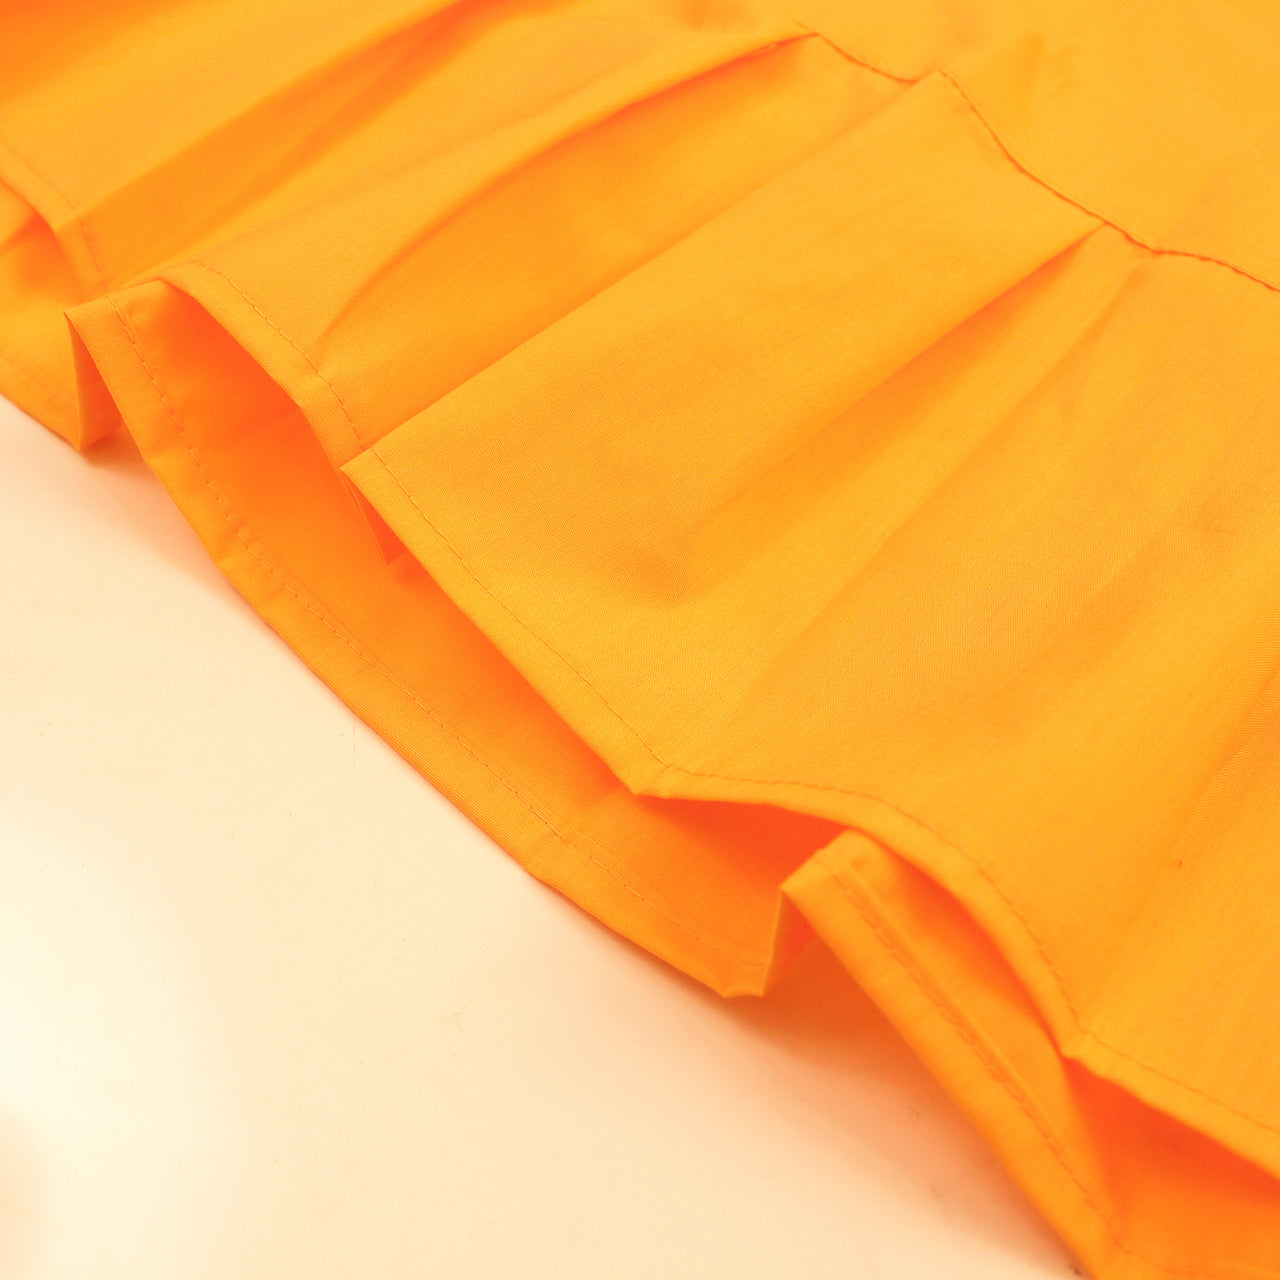 Light Orange - Sari (Saree) Petticoat - Available in S, M, L & XL - Underskirts For Sari's